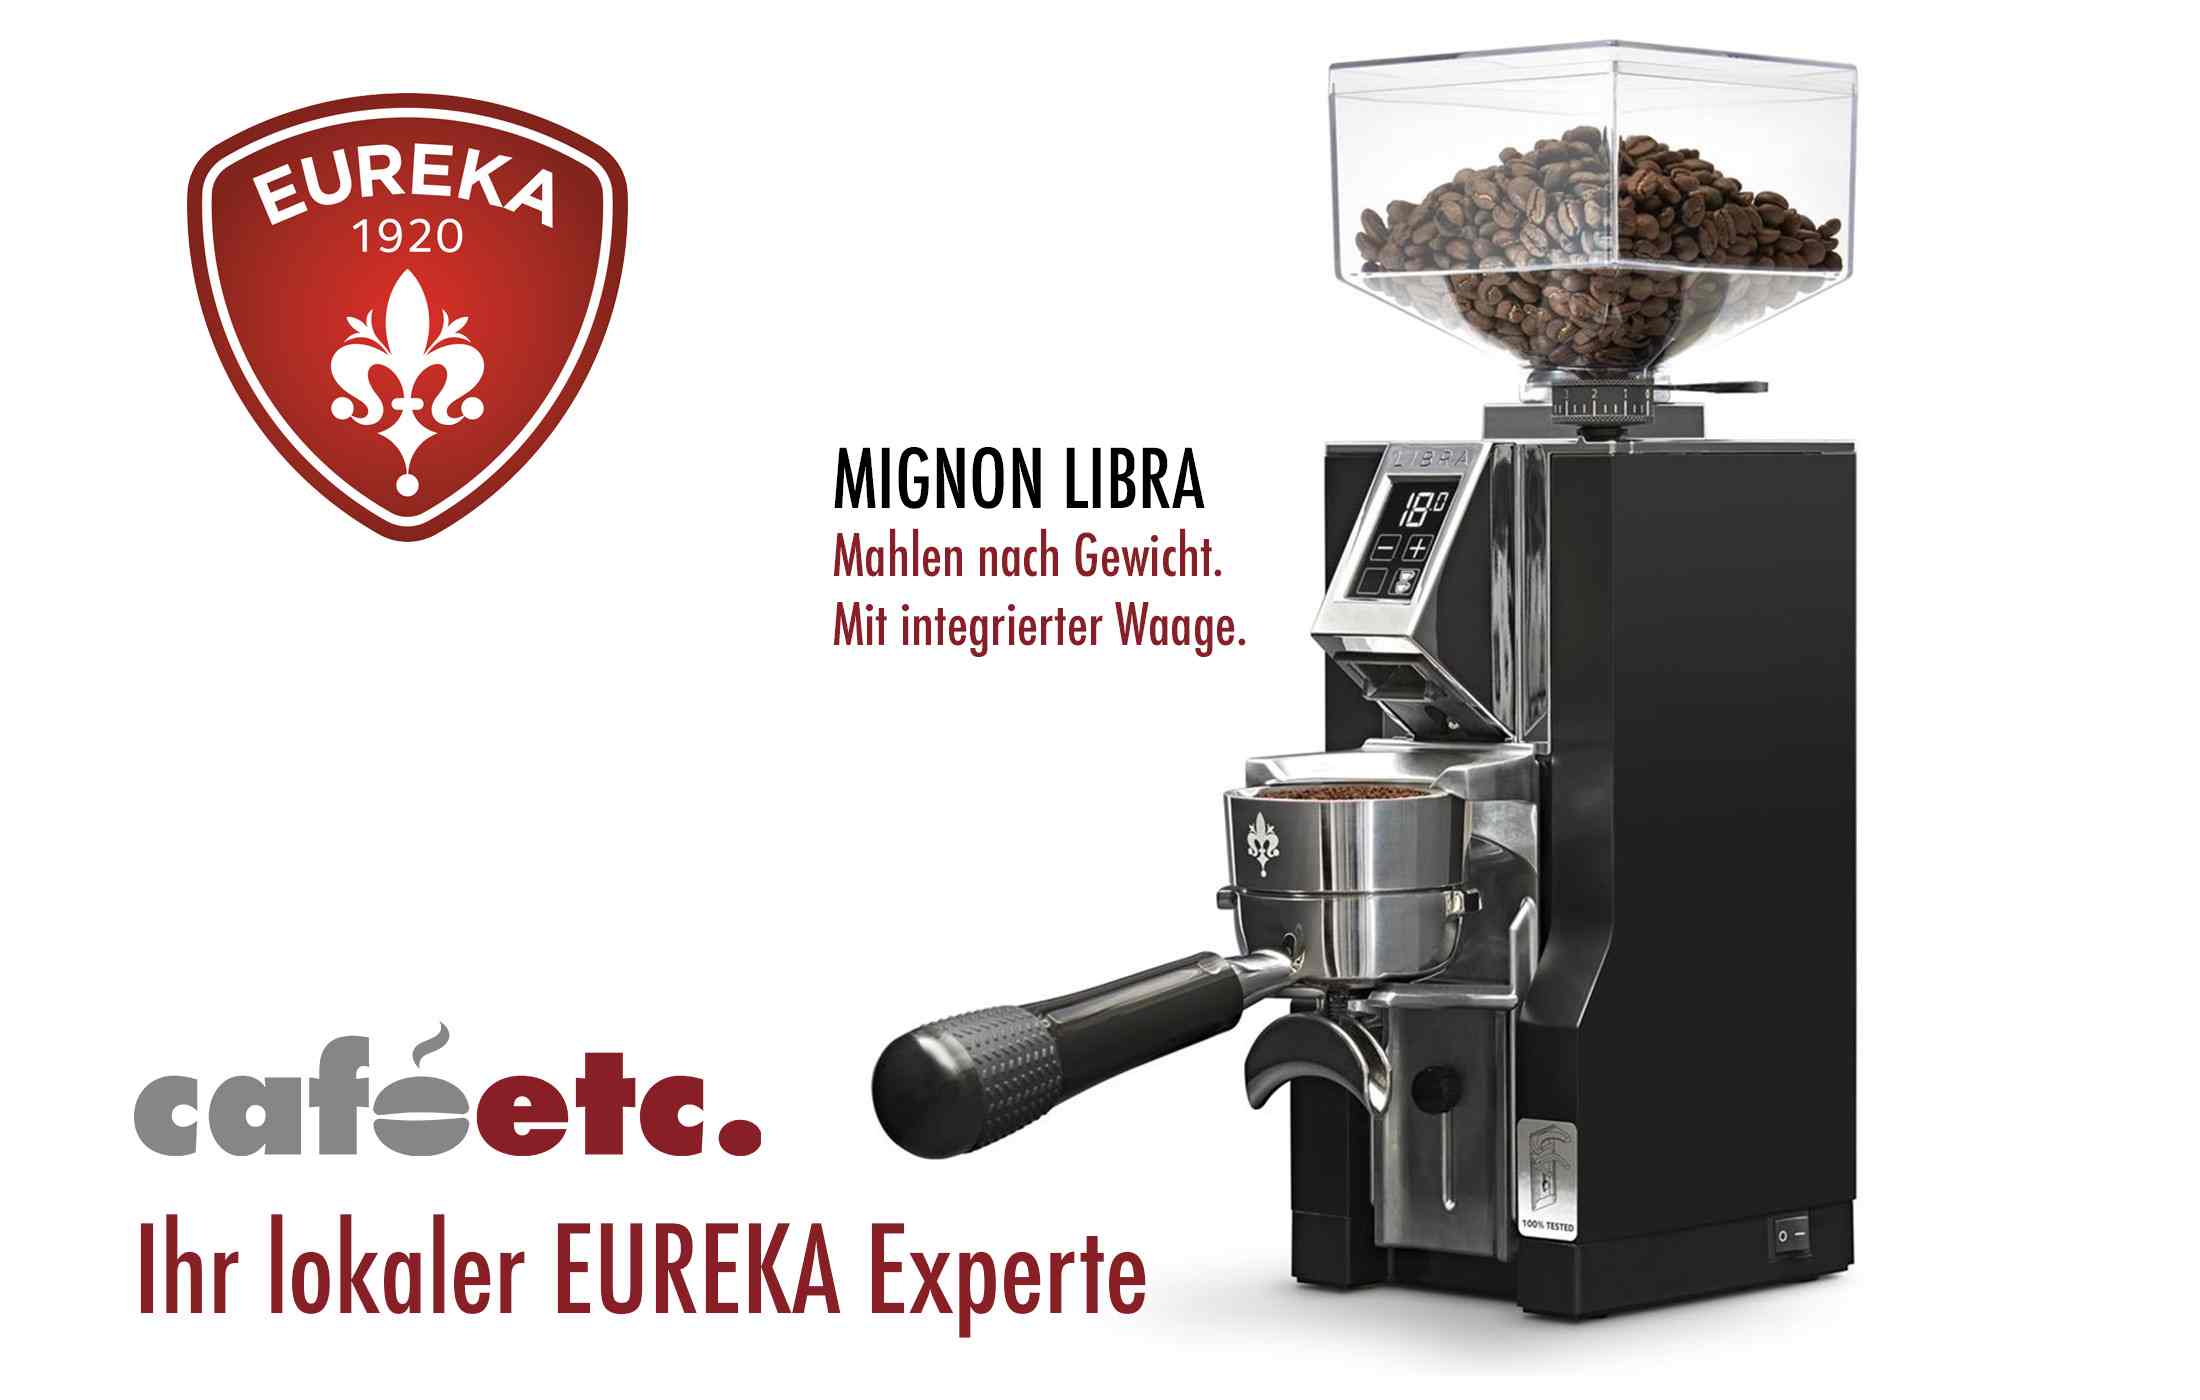 Eureka Mignon Libra Schwarz Kaffeemühle caféetc. Dübendorf Zürich Schweiz